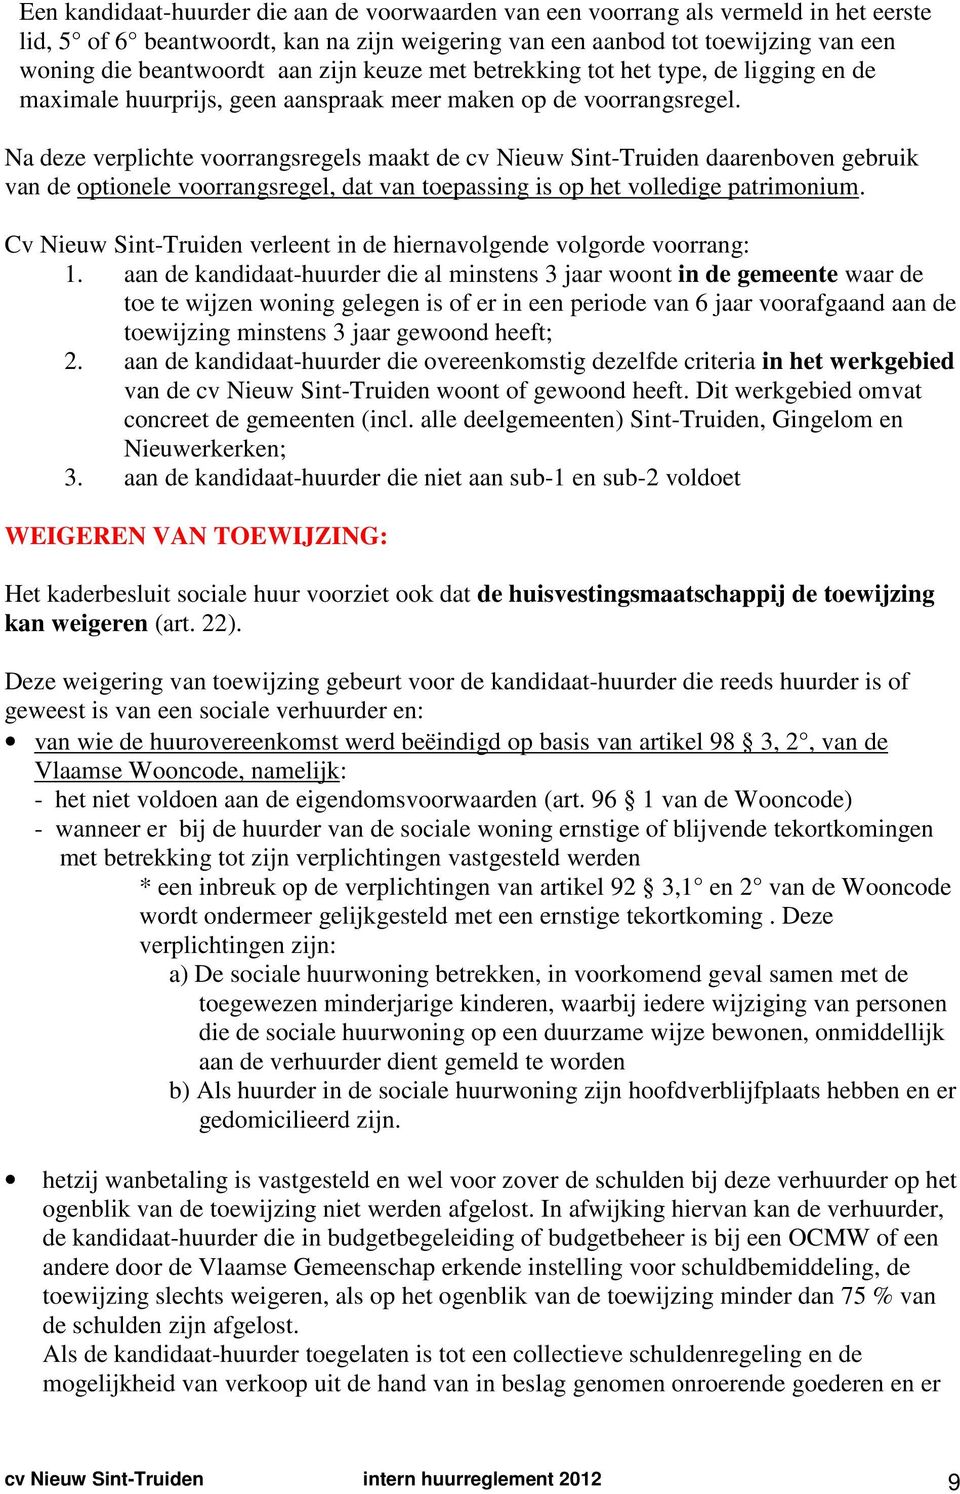 Na deze verplichte voorrangsregels maakt de cv Nieuw Sint-Truiden daarenboven gebruik van de optionele voorrangsregel, dat van toepassing is op het volledige patrimonium.